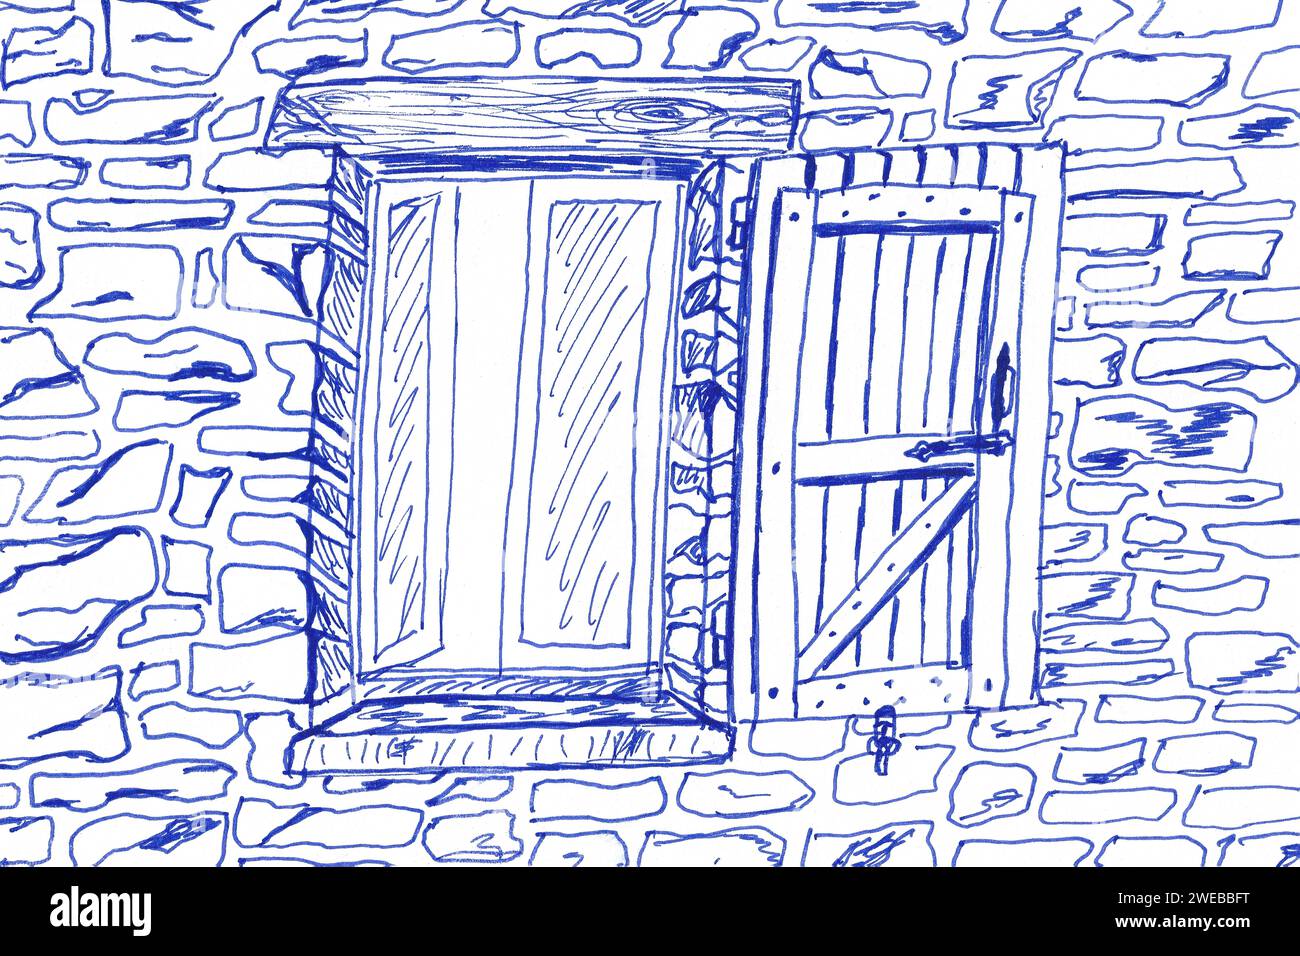 Abstrakte primitive Zeichnung des italienischen casa Villas-Fensters. kugelschreiberskizze. Vereinfachtes Zeichnen für die Praxis, das Skizzieren in Kugelschreiber Stockfoto